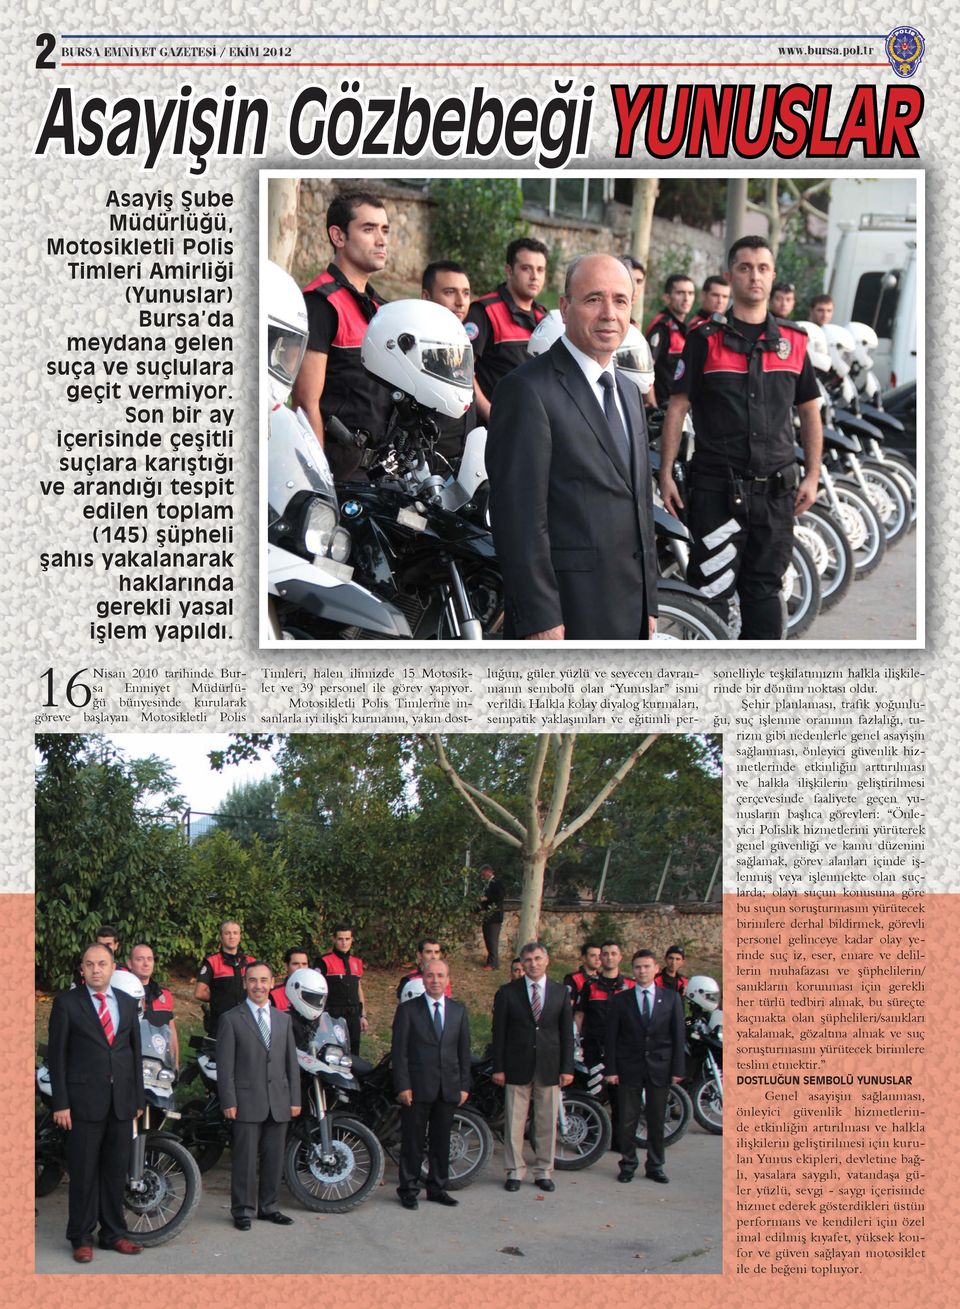 16 Nisan 2010 tarihinde Bursa Emniyet Müdürlüğü bünyesinde kurularak göreve başlayan Motosikletli Polis Timleri, halen ilimizde 15 Motosiklet ve 39 personel ile görev yapıyor.